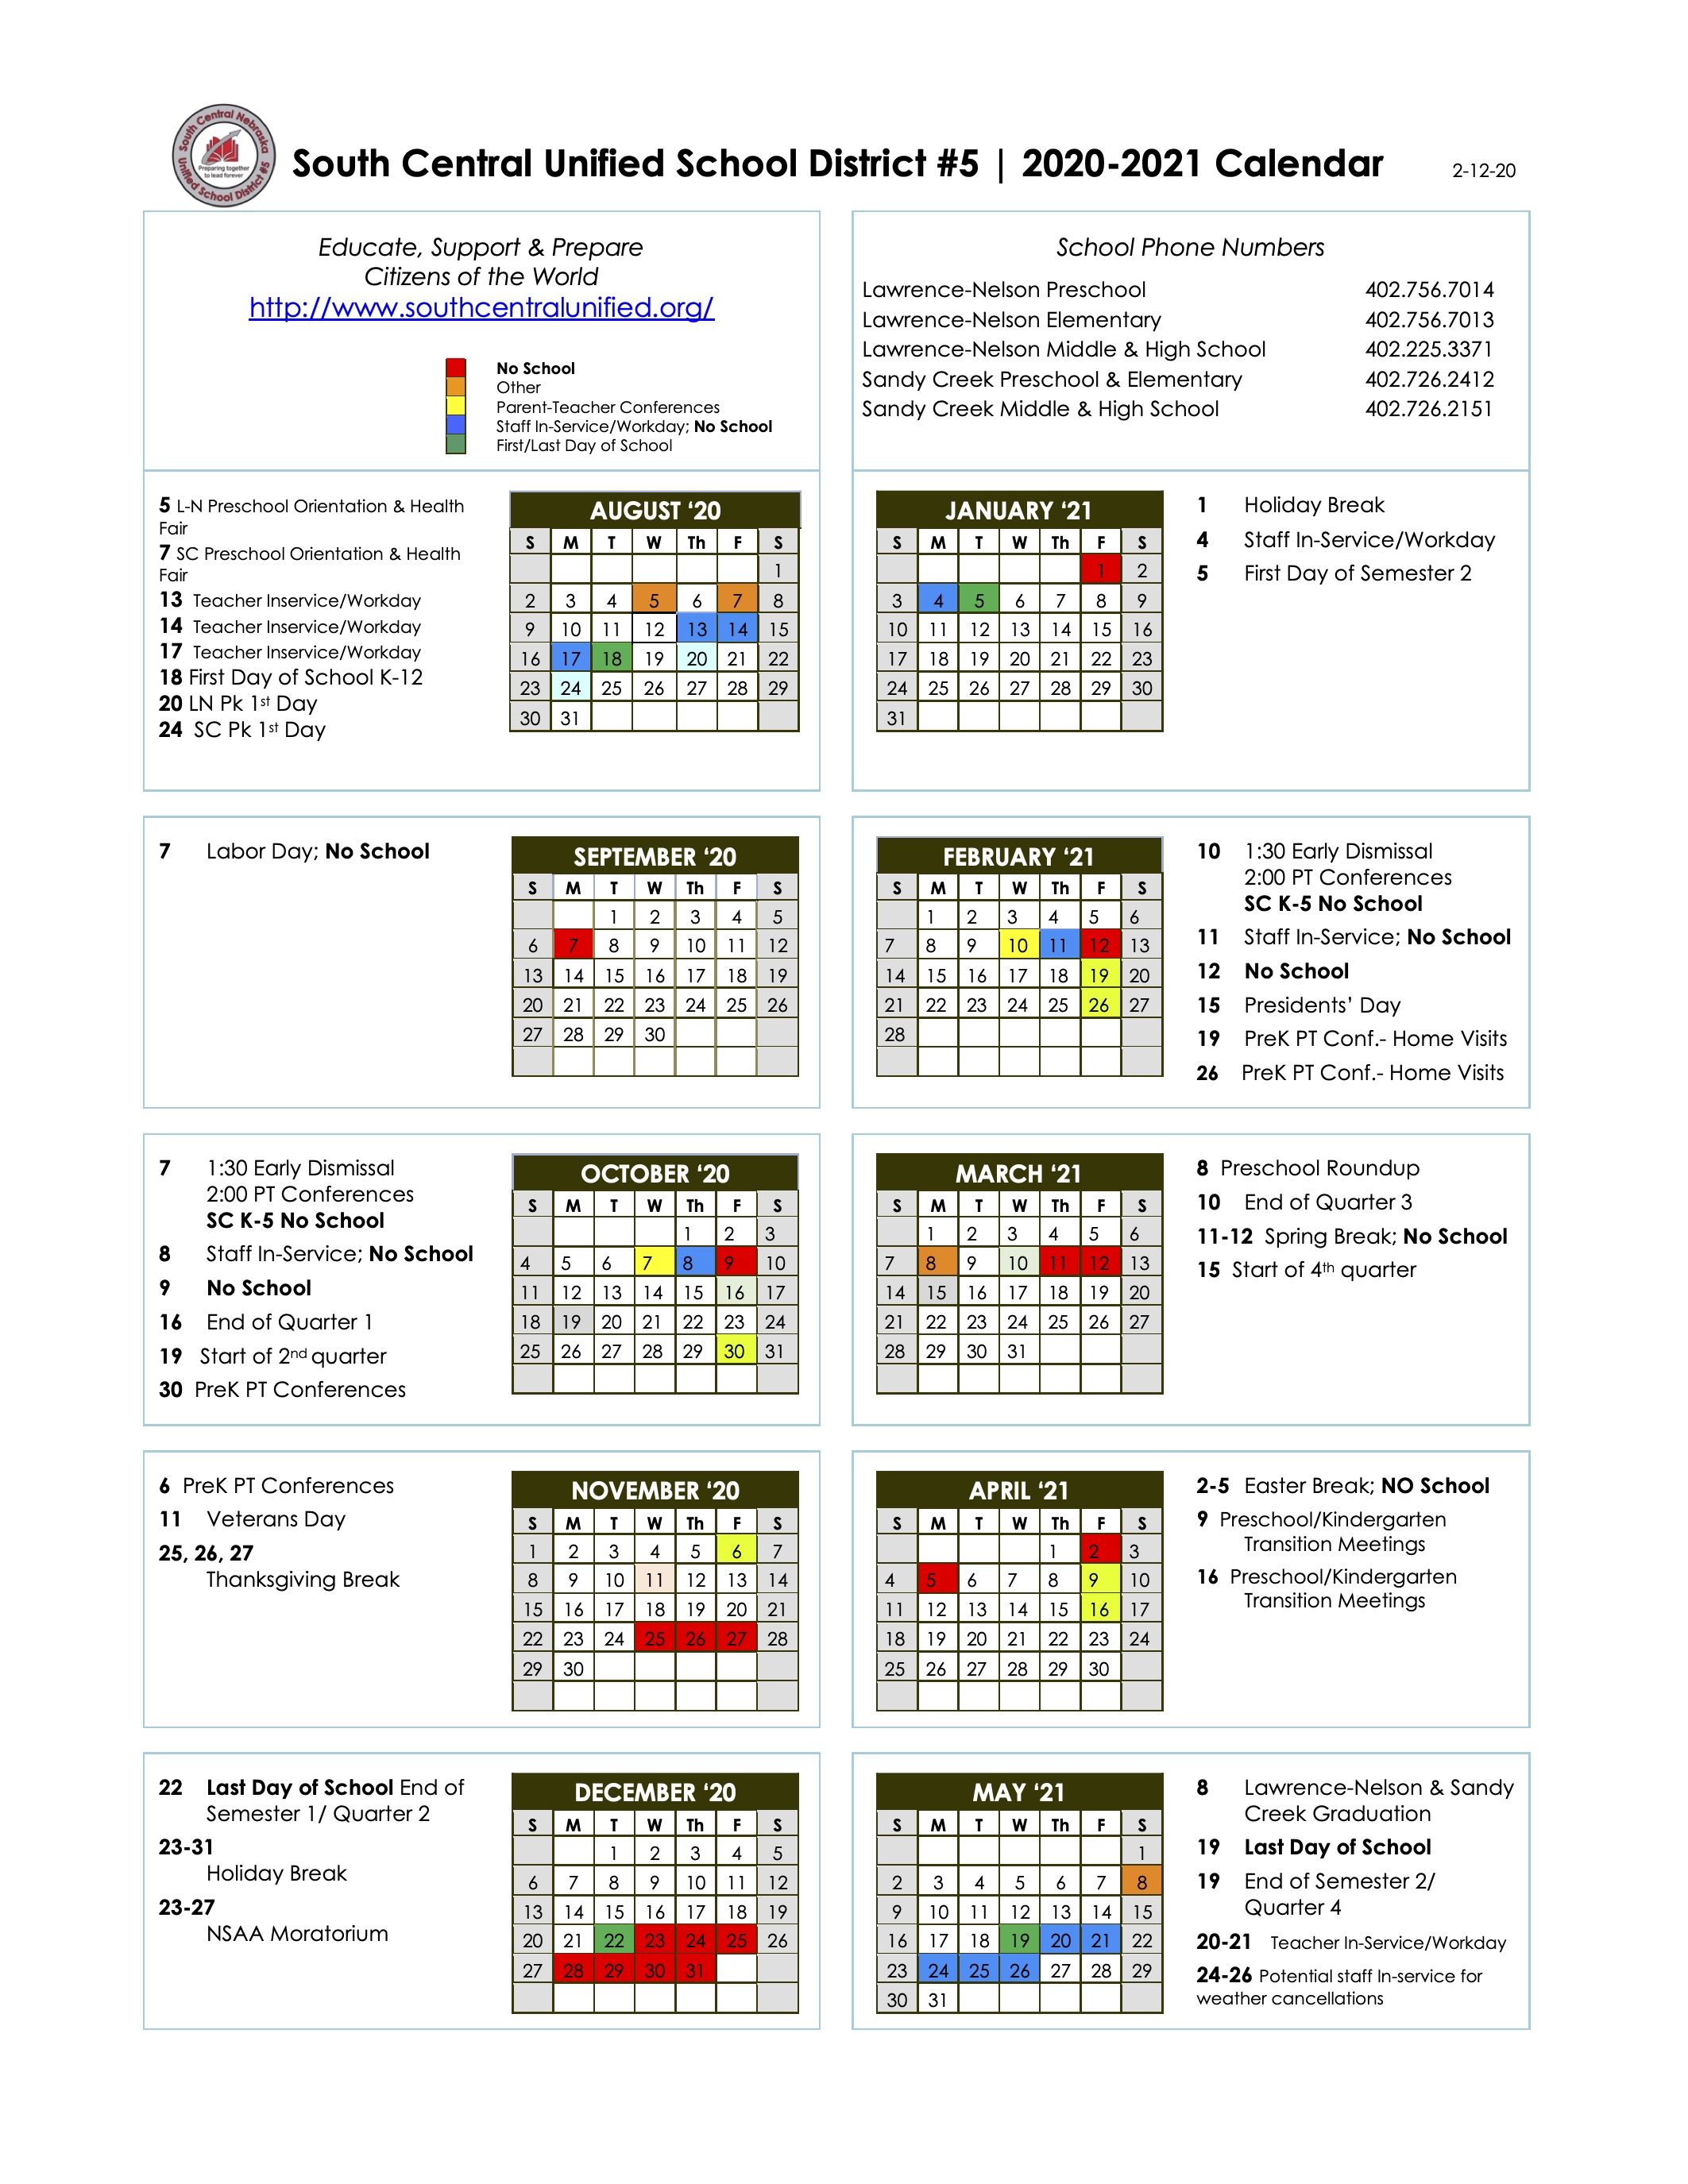 usd-368-calendar-customize-and-print